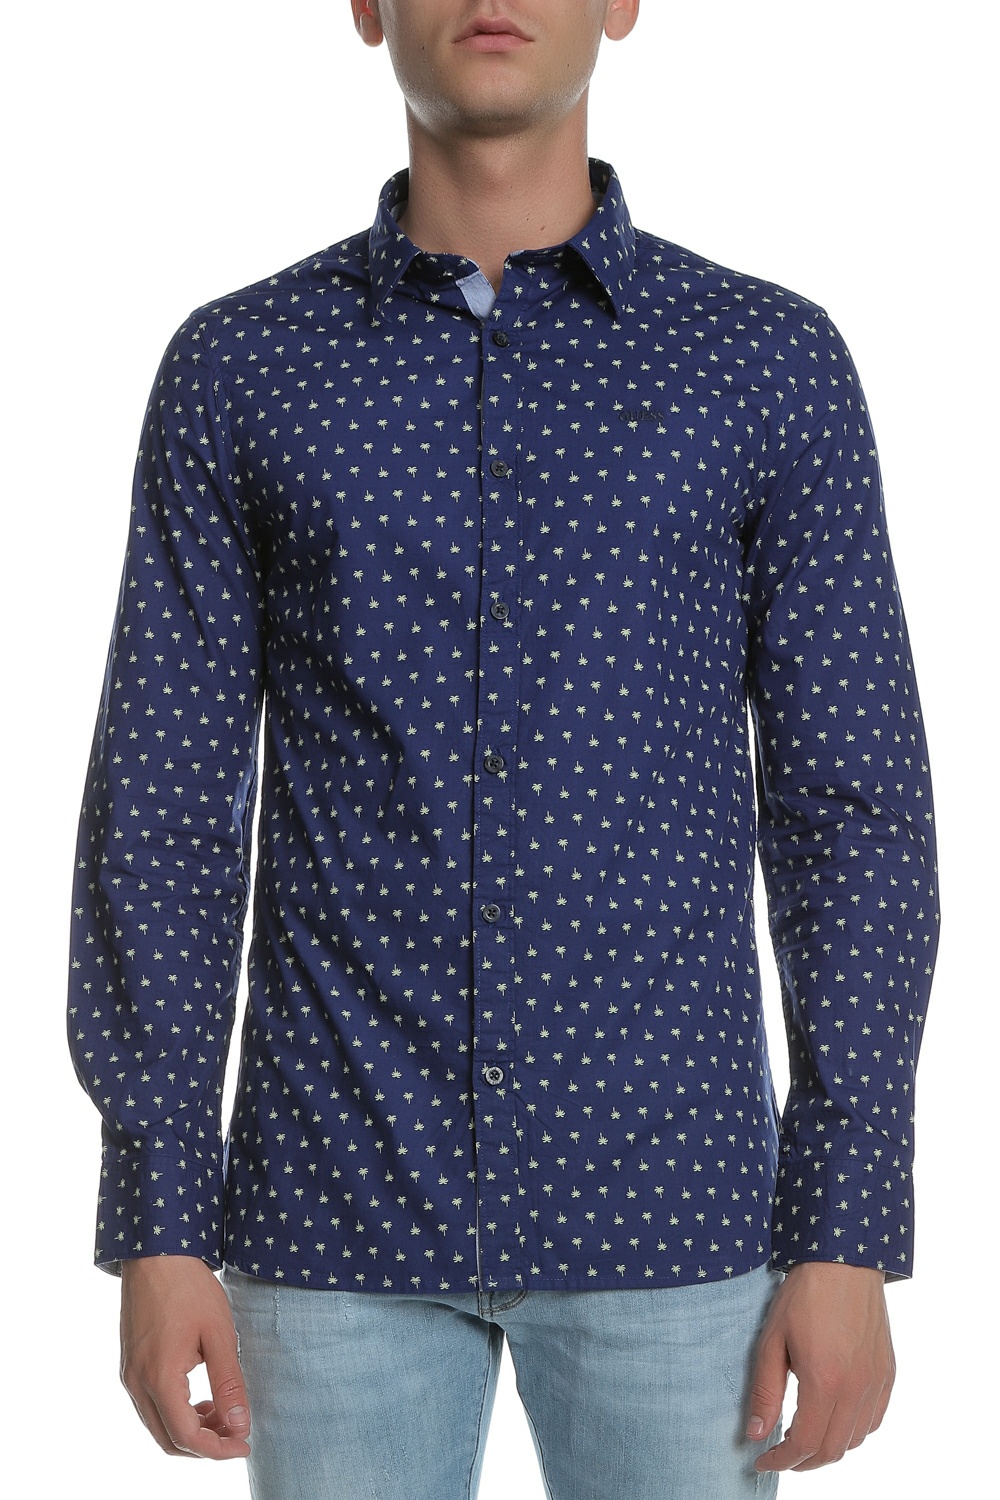 Ανδρικά/Ρούχα/Πουκάμισα/Μακρυμάνικα GUESS - Ανδρικό πουκάμισο GUESS SUNSET μπλε